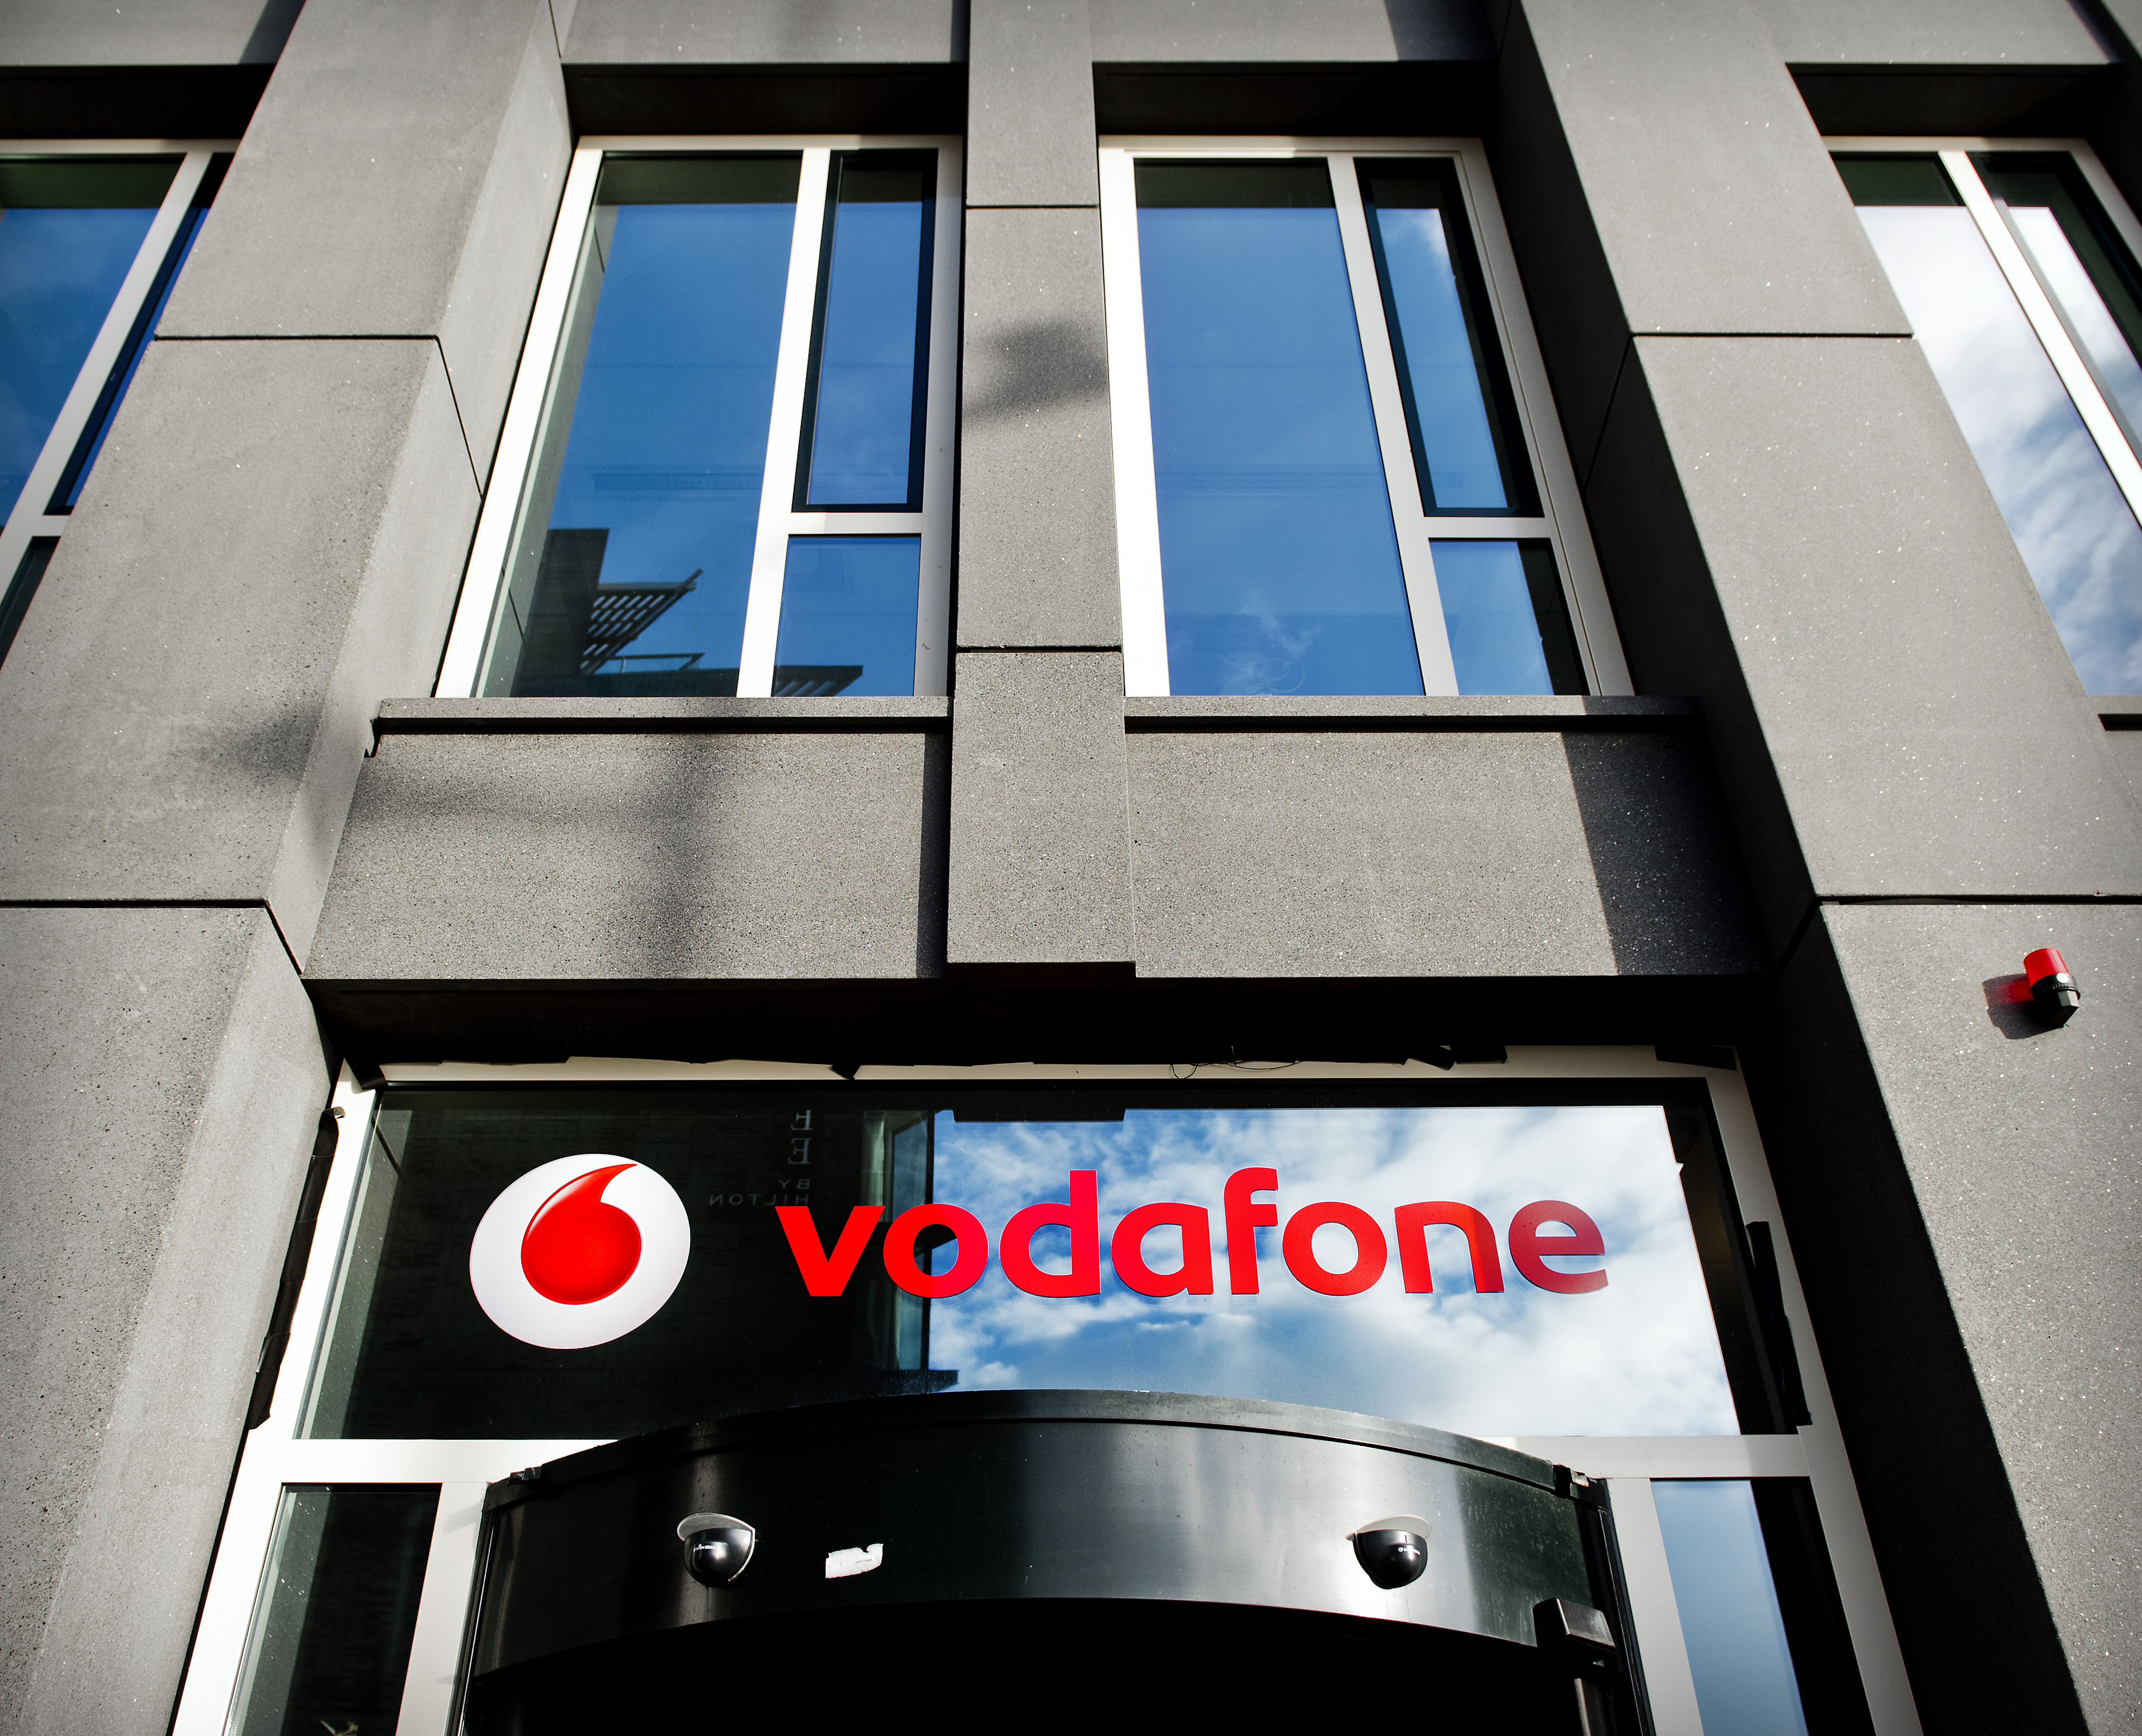 Telecombedrijf Vodafone ziet druk op de inkomsten in Nederland. Ook neemt het aantal klanten af. Vodafone Nederland heeft in het gebroken boekjaar 2013/2014 minder omzet geboekt dan een jaar eerder. De daling werd onder meer veroorzaakt door de economische omstandigheden en door regelgeving. Het bedrijf maakte dinsdag ook bekend dat het aantal klanten in het afgelopen jaar is gedaald. De operationele omzet daalde met 5,6 procent tot ruim 1,7 miljard euro. De omzet per klant nam met 5,9 procent af tot 25,10 euro. Ook een daling van het aantal prepaidbellers had een negatief effect op de inkomsten. Het totale aantal klanten liep met 0,6 procent terug van 5,3 miljoen tot 5,27 miljoen.